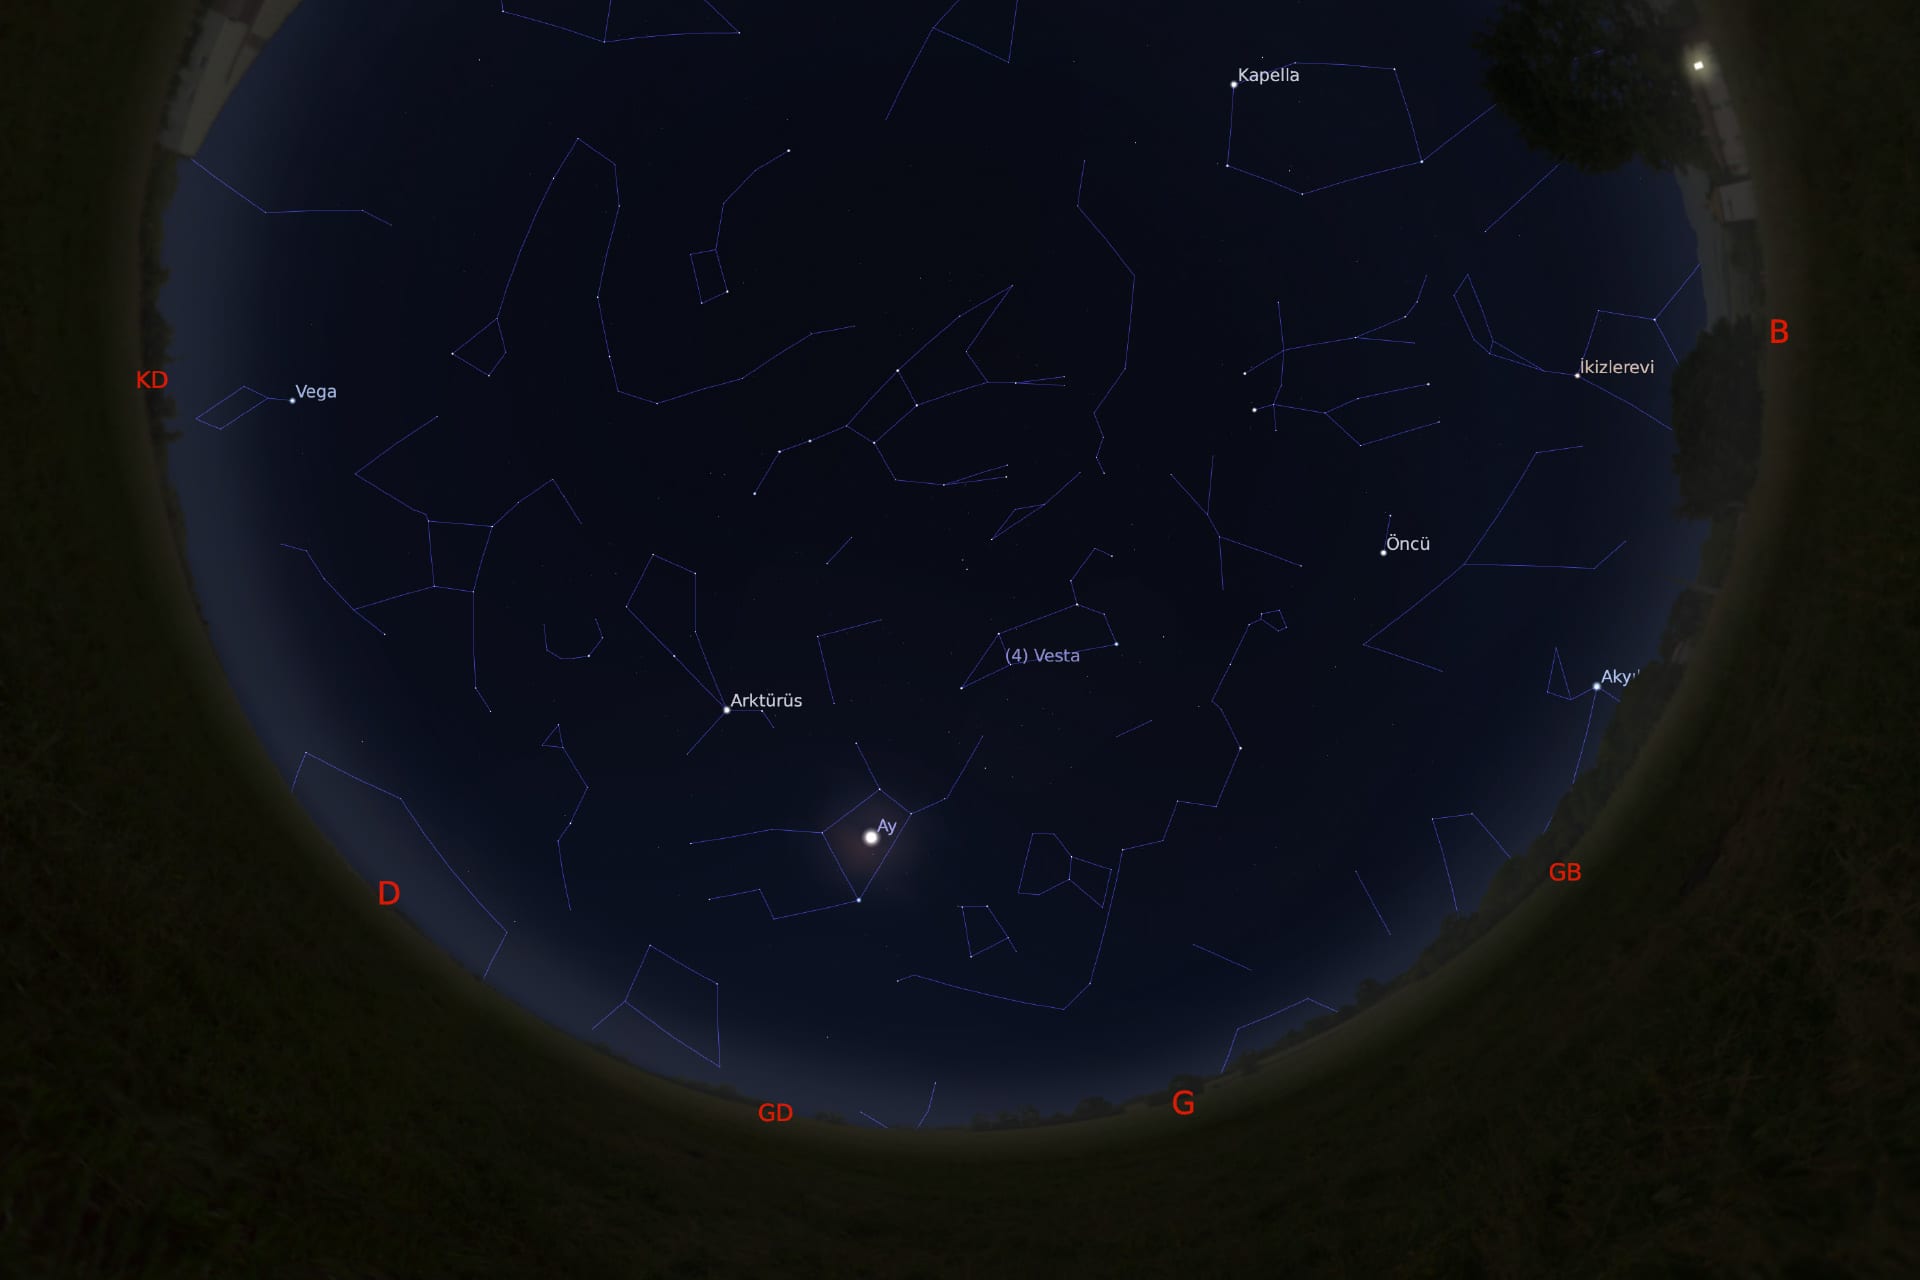 1 Mart 2021 - saat 01:30'daki gökyüzü görüntüsü